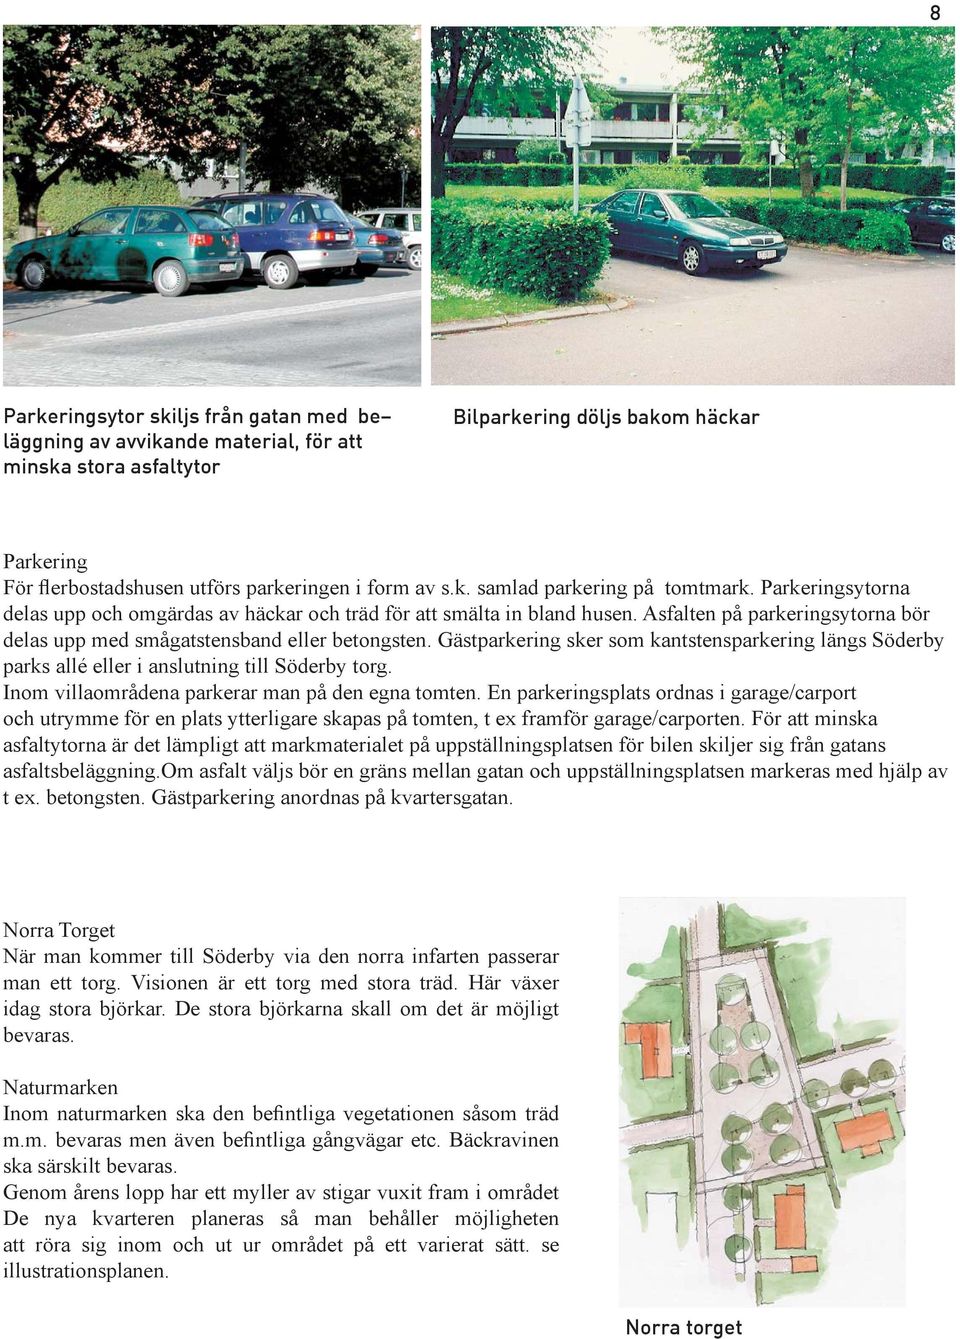 Asfalten på parkeringsytorna bör delas upp med smågatstensband eller betongsten. Gästparkering sker som kantstensparkering längs Söderby parks allé eller i anslutning till Söderby torg.